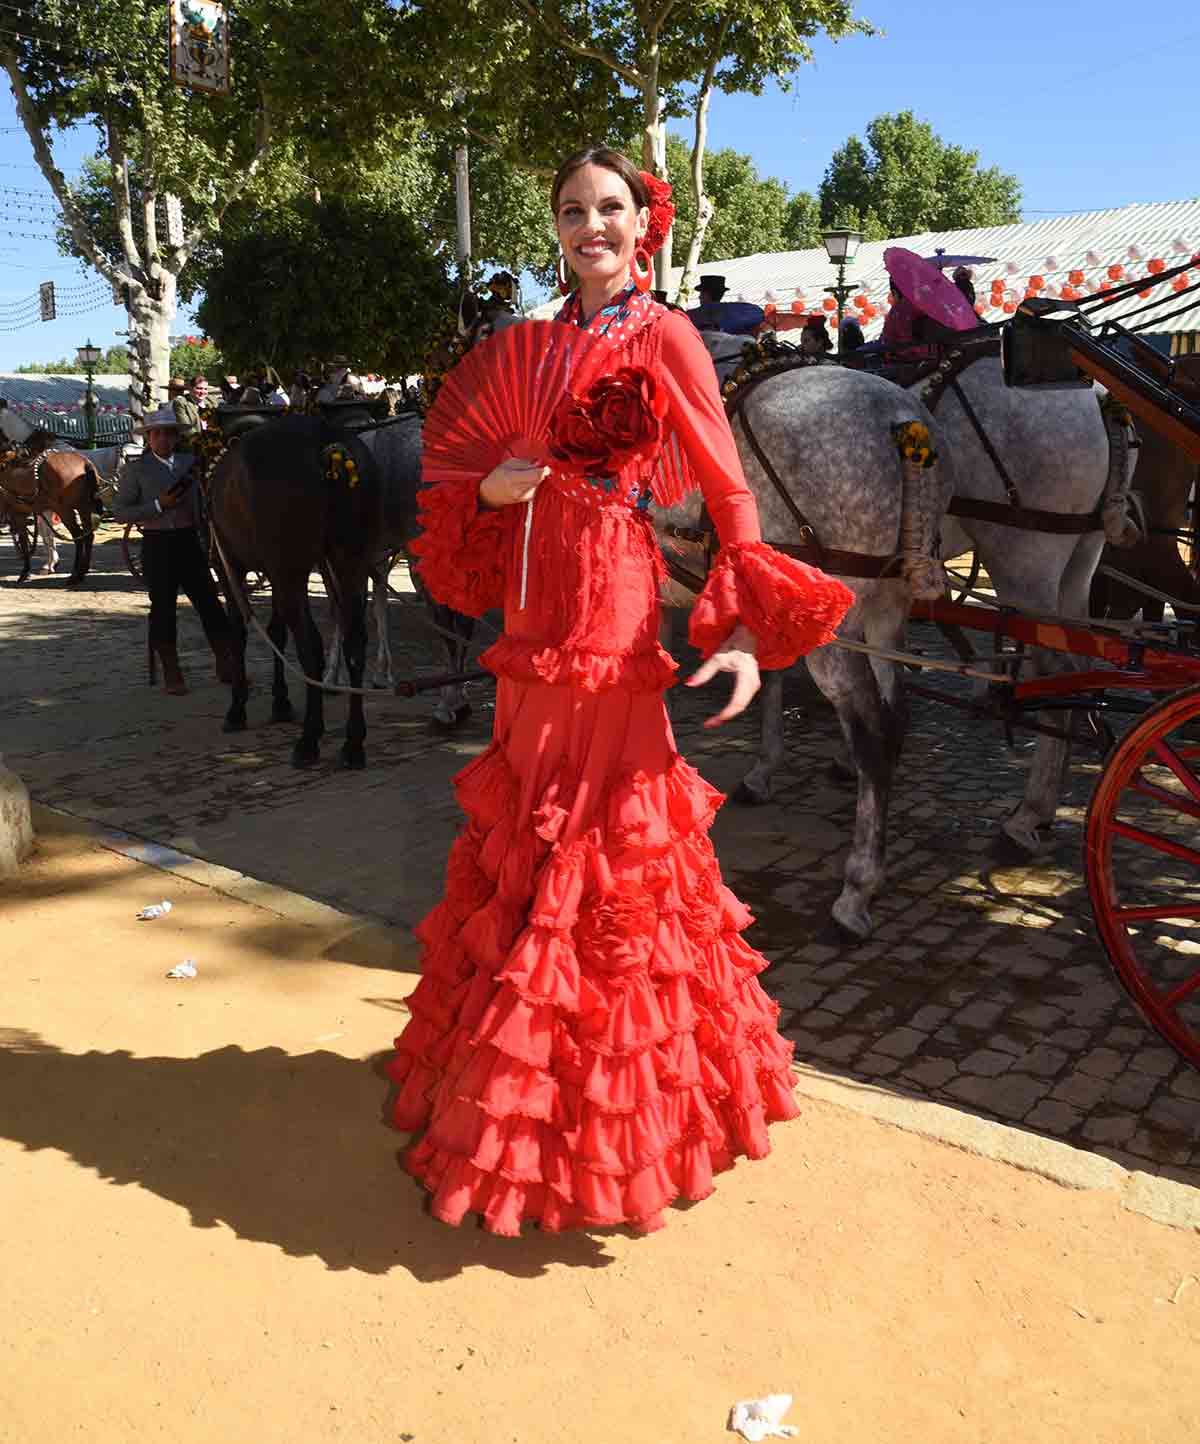 De Victoria de Marichalar a Sofía Palazuelo: los trajes de flamenca más  bonitos de la Feria de Abril - Foto 1